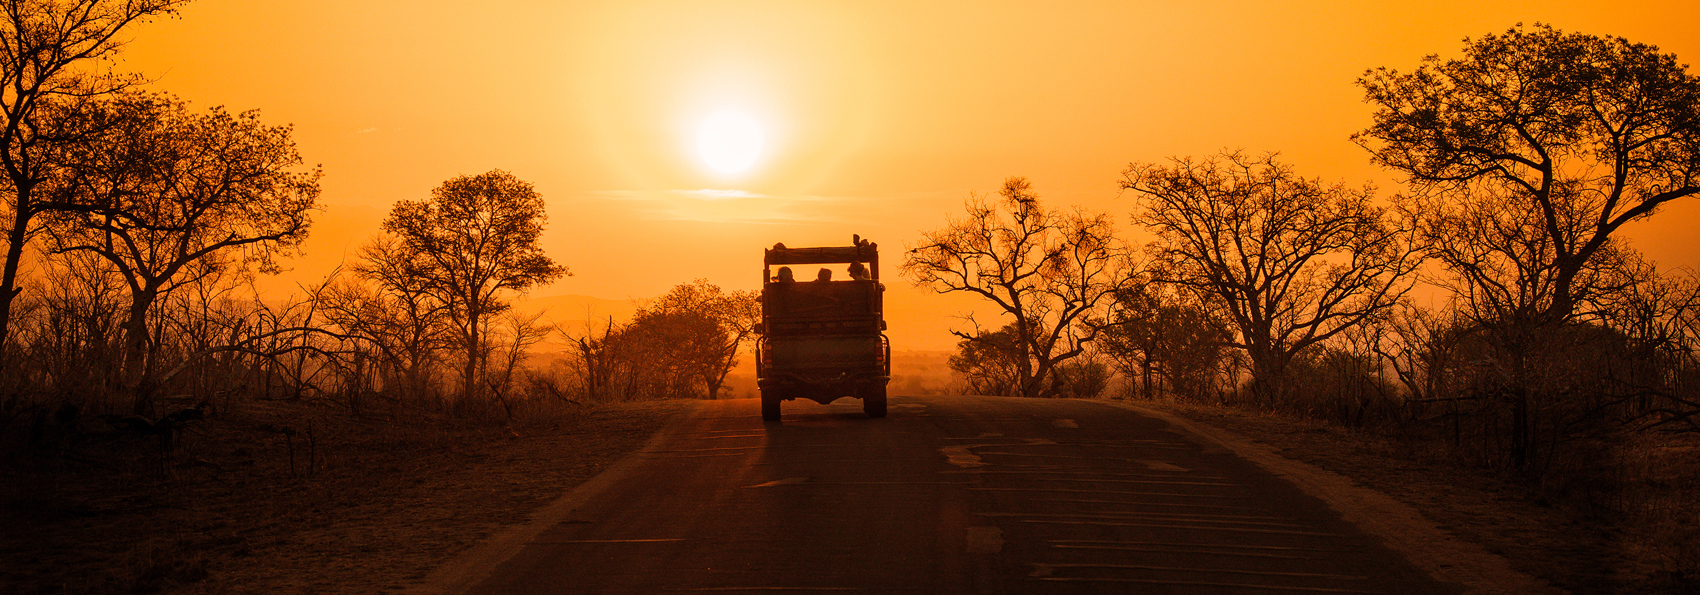 sydafrika - kruger_sunset_slider_01